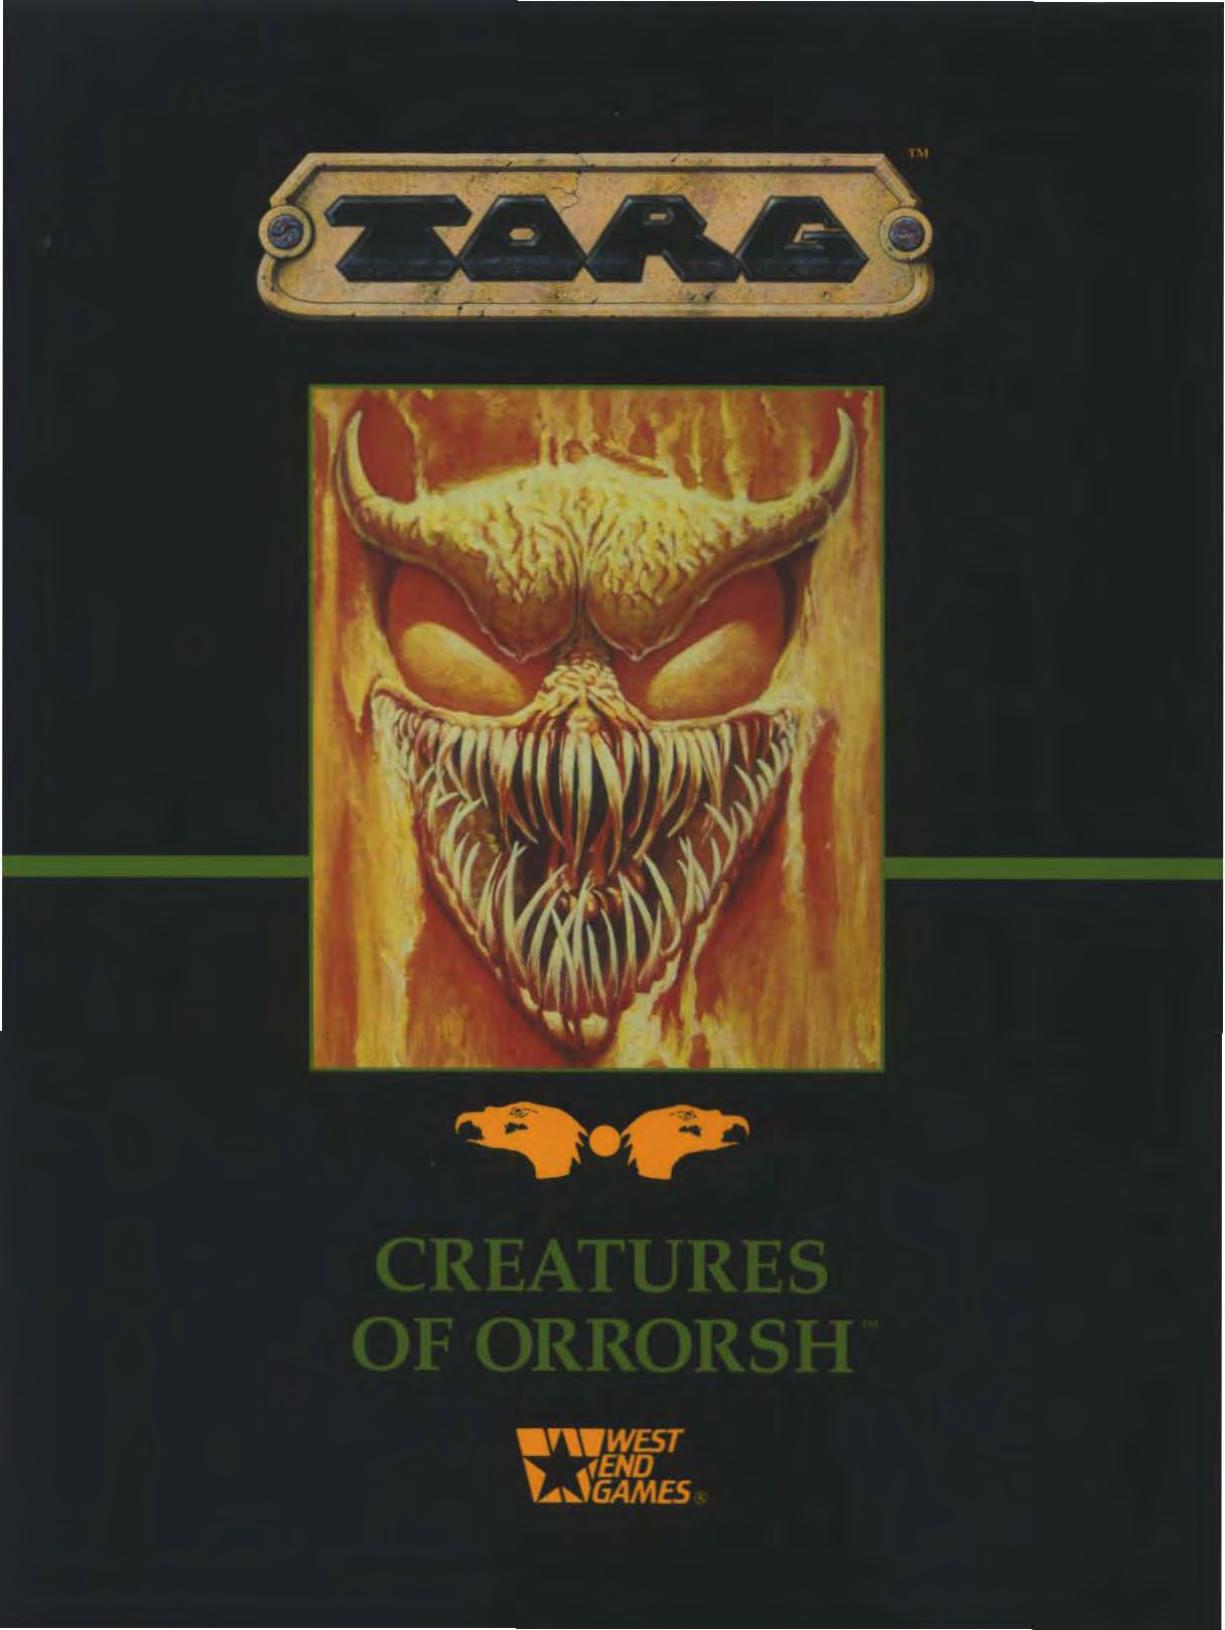 Creatures of Orrorsh